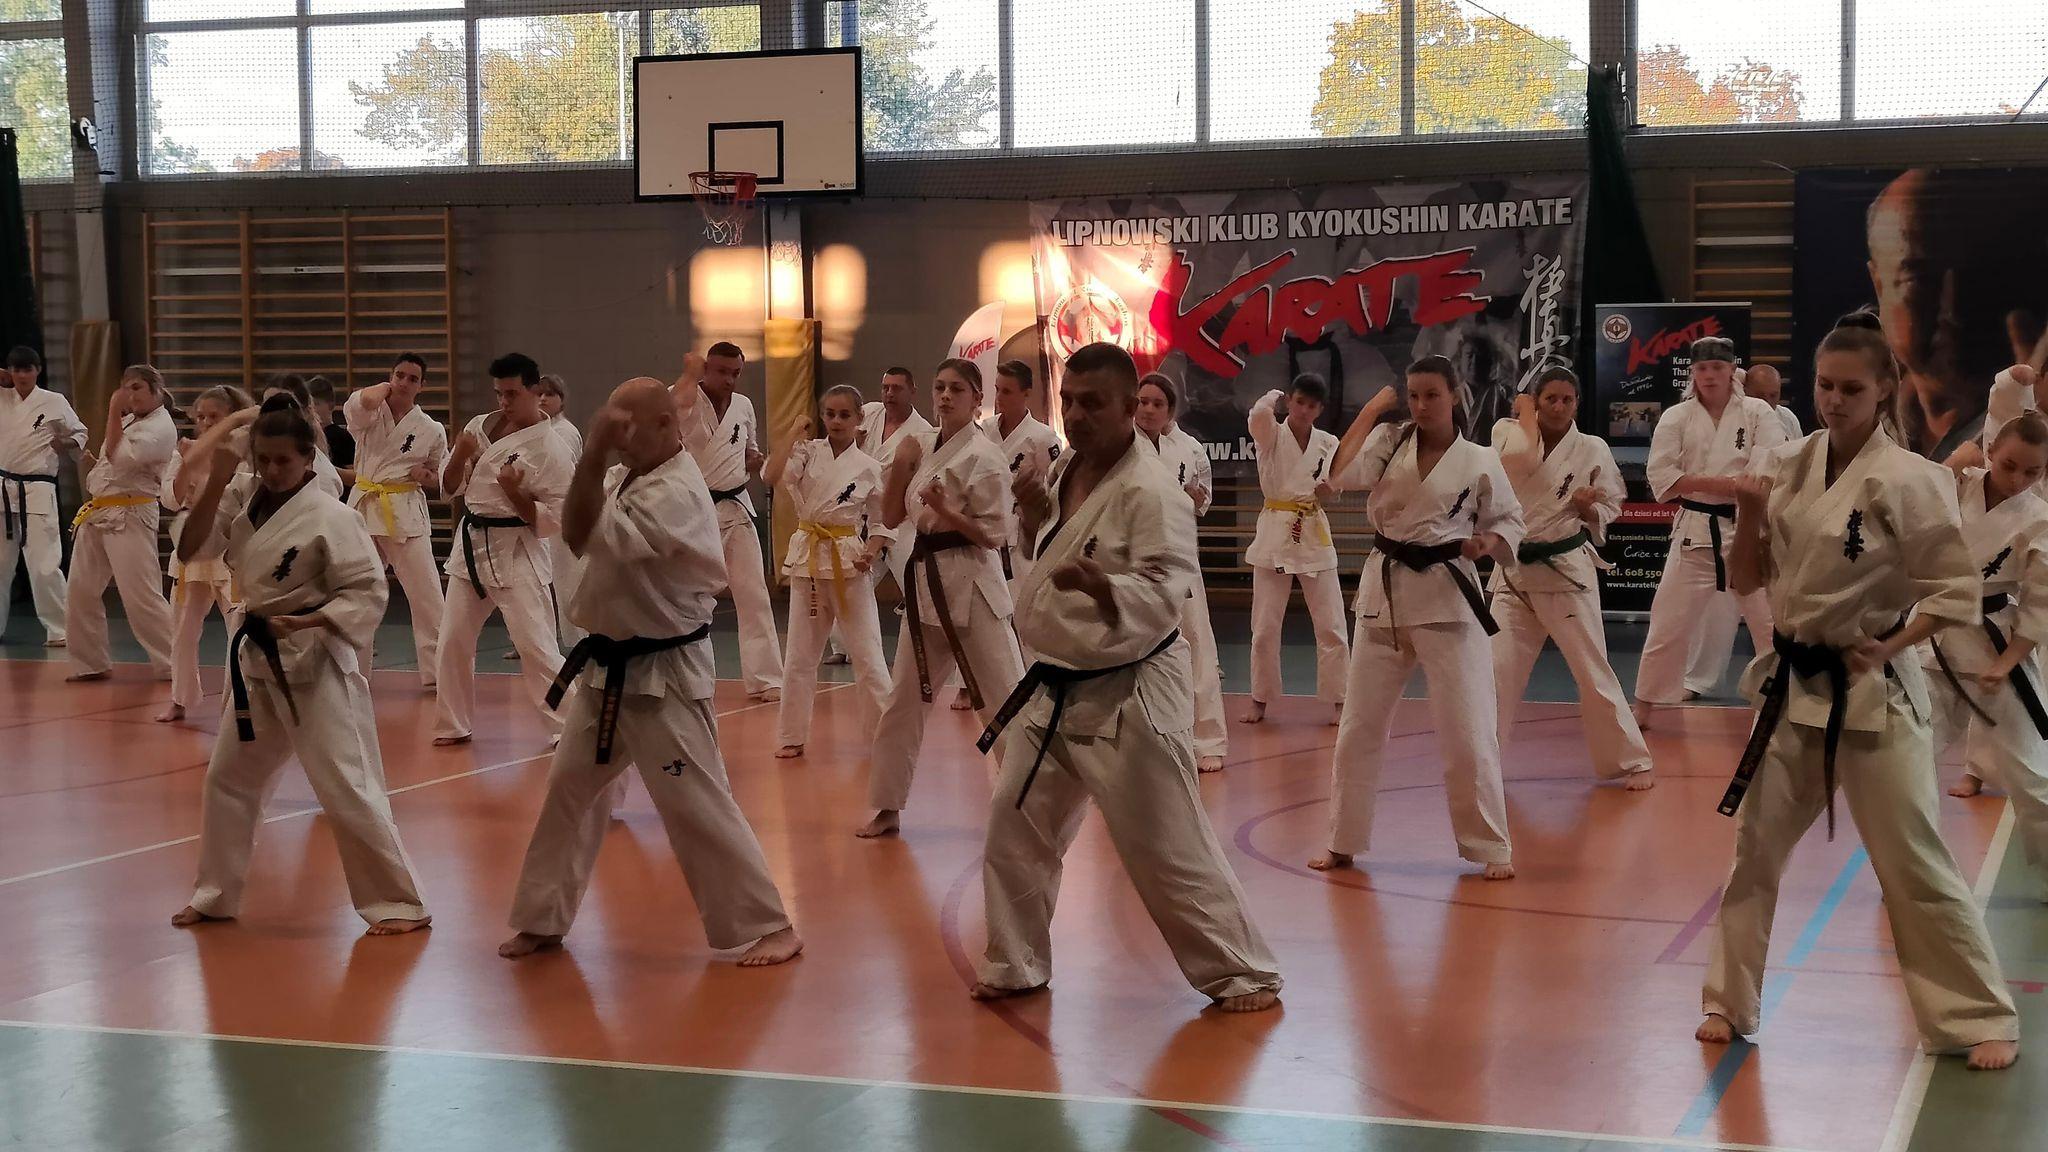 Zdj. nr. 2. Seminarium szkoleniowe Karate Kyokushin w Lipnie